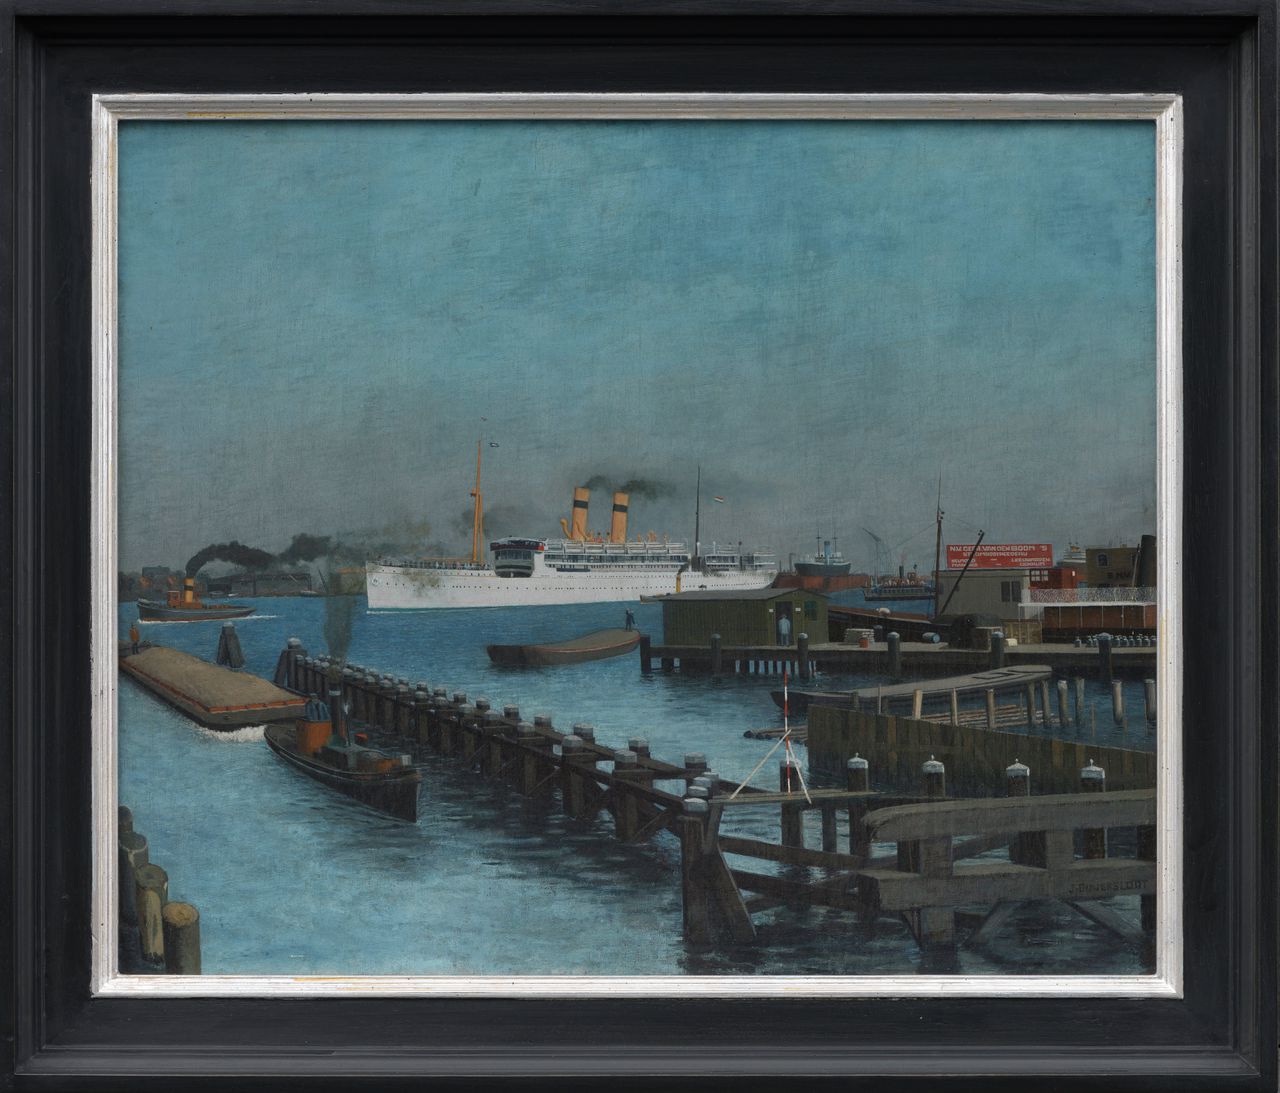 De oceaanstomer ‘Gelria’ eind jaren 20 van de vorige eeuw aan de De Ruyterkade in Amsterdam, geschilderd door Jan Ouwersloot (1902-1975).